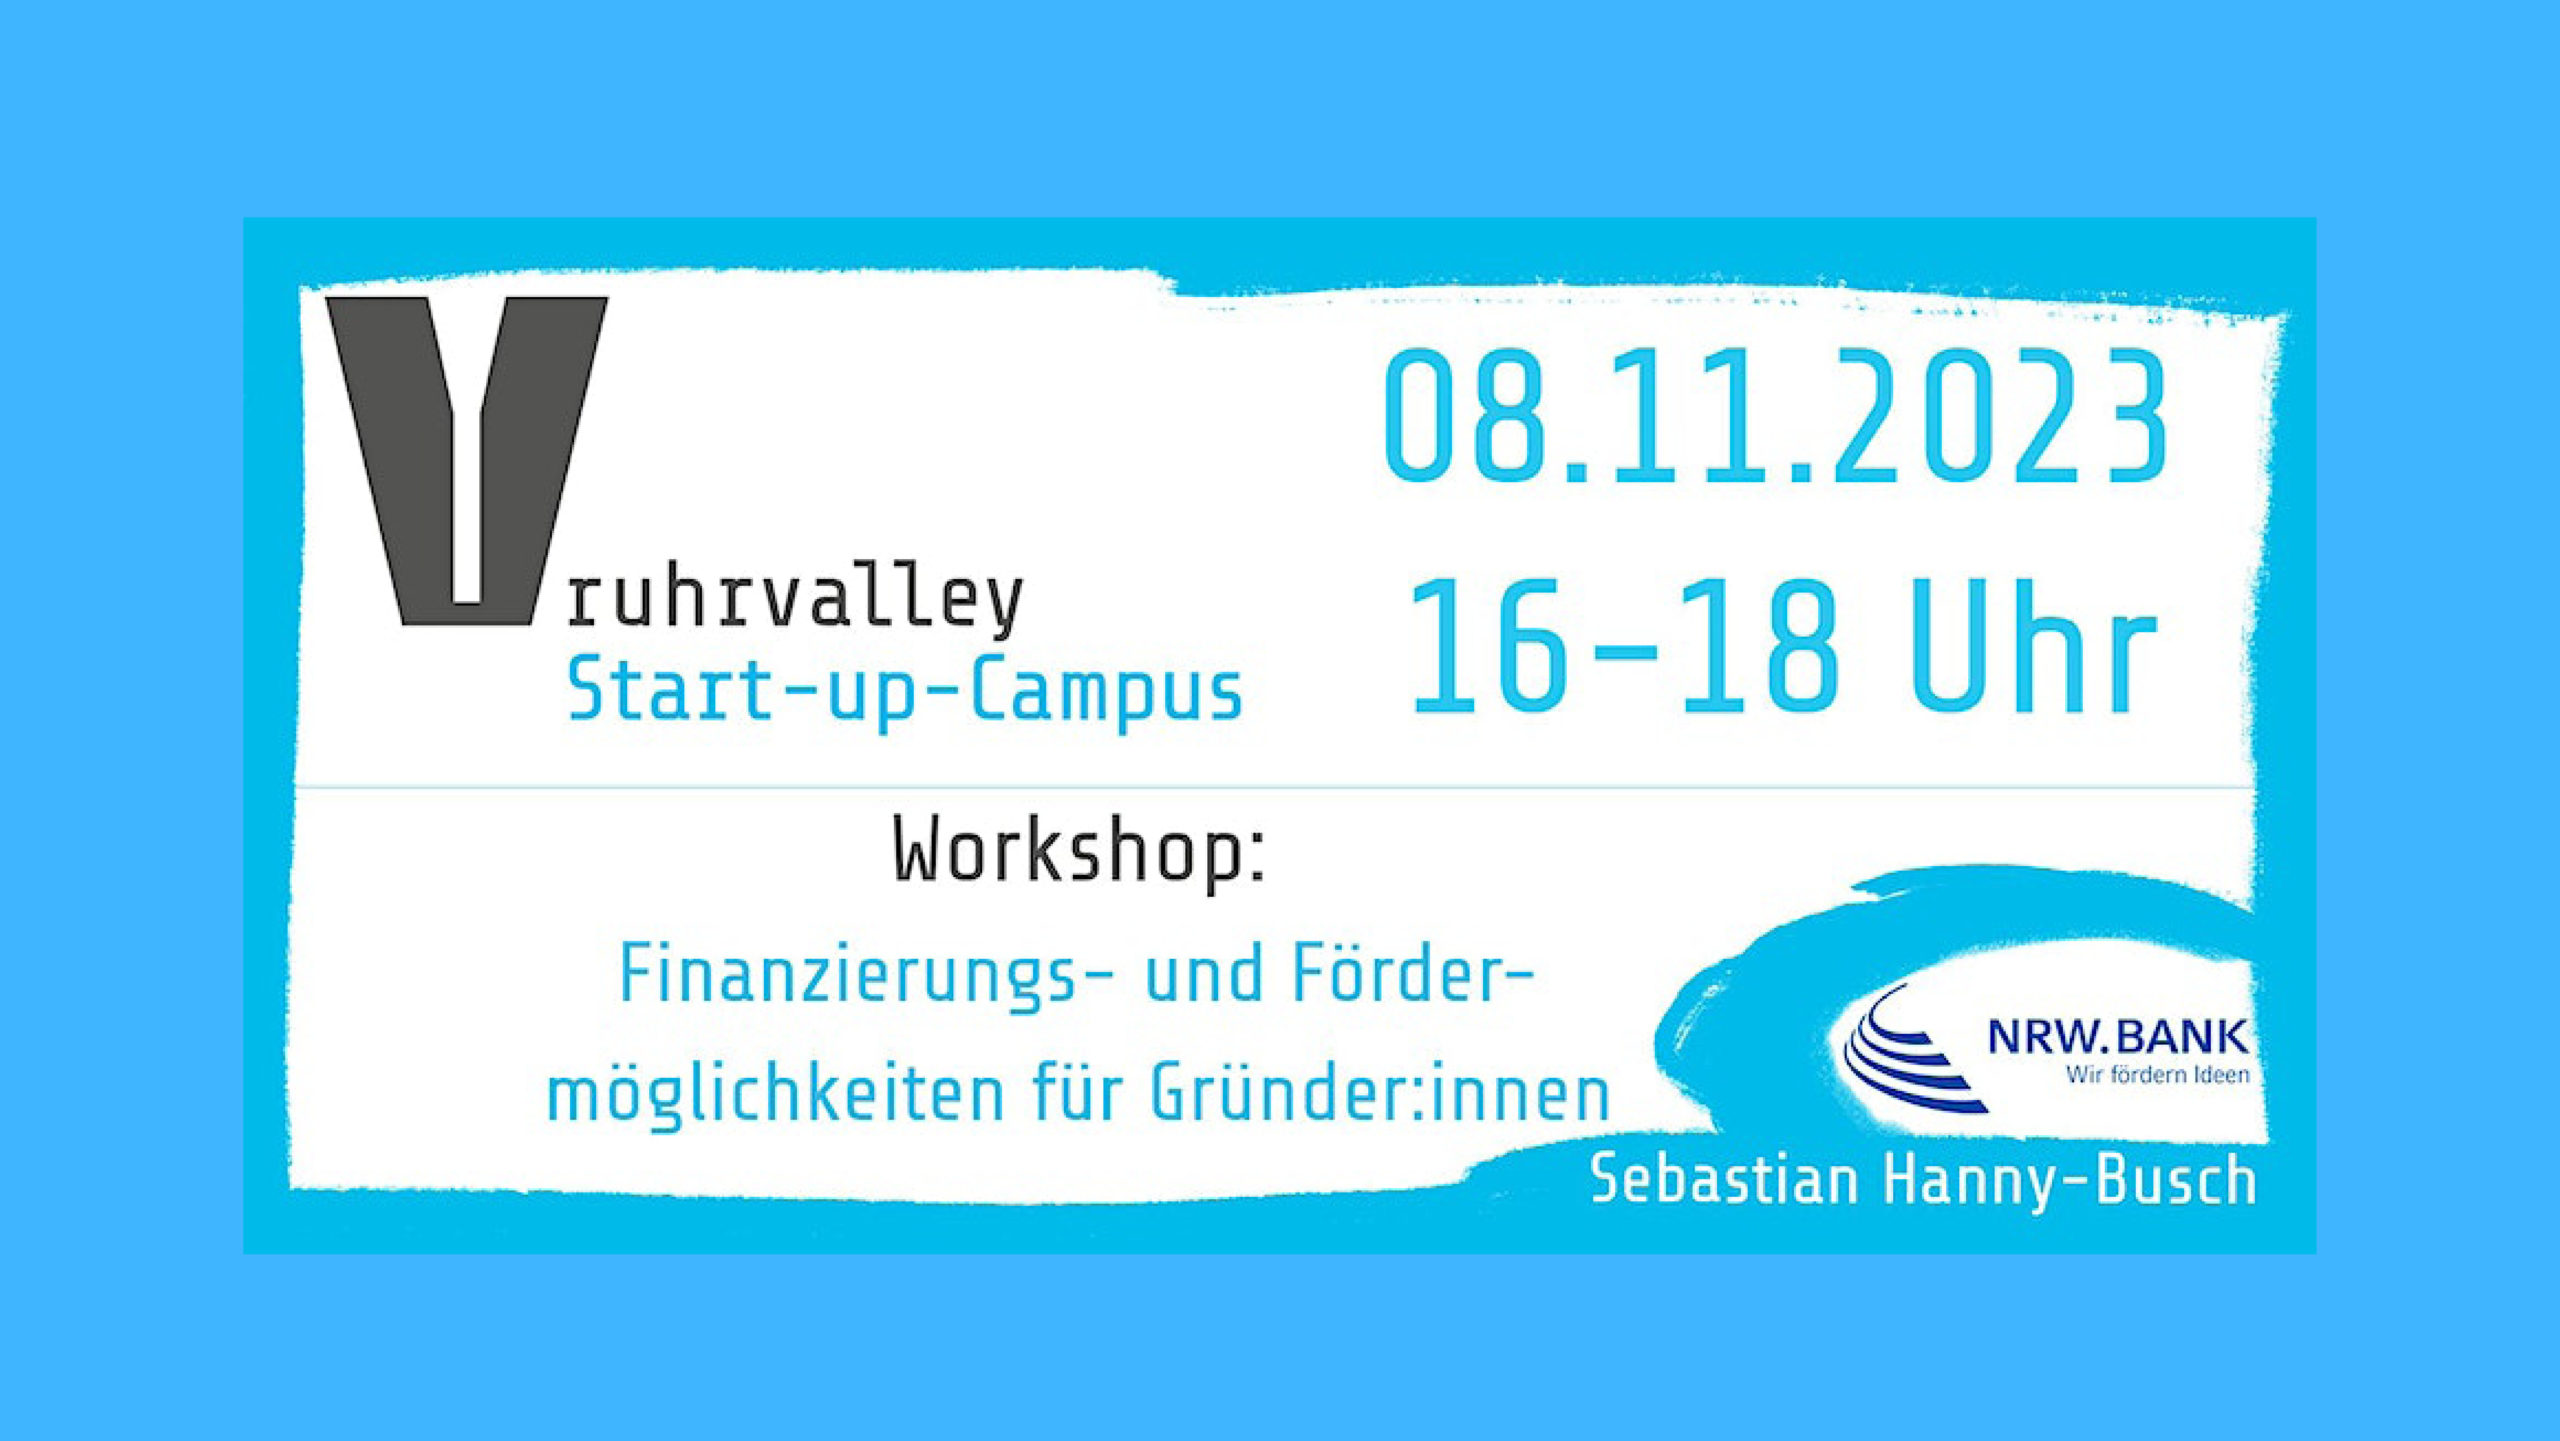 Online-Workshop: Finanzierungs- und Fördermöglichkeiten für Gründer:innen.